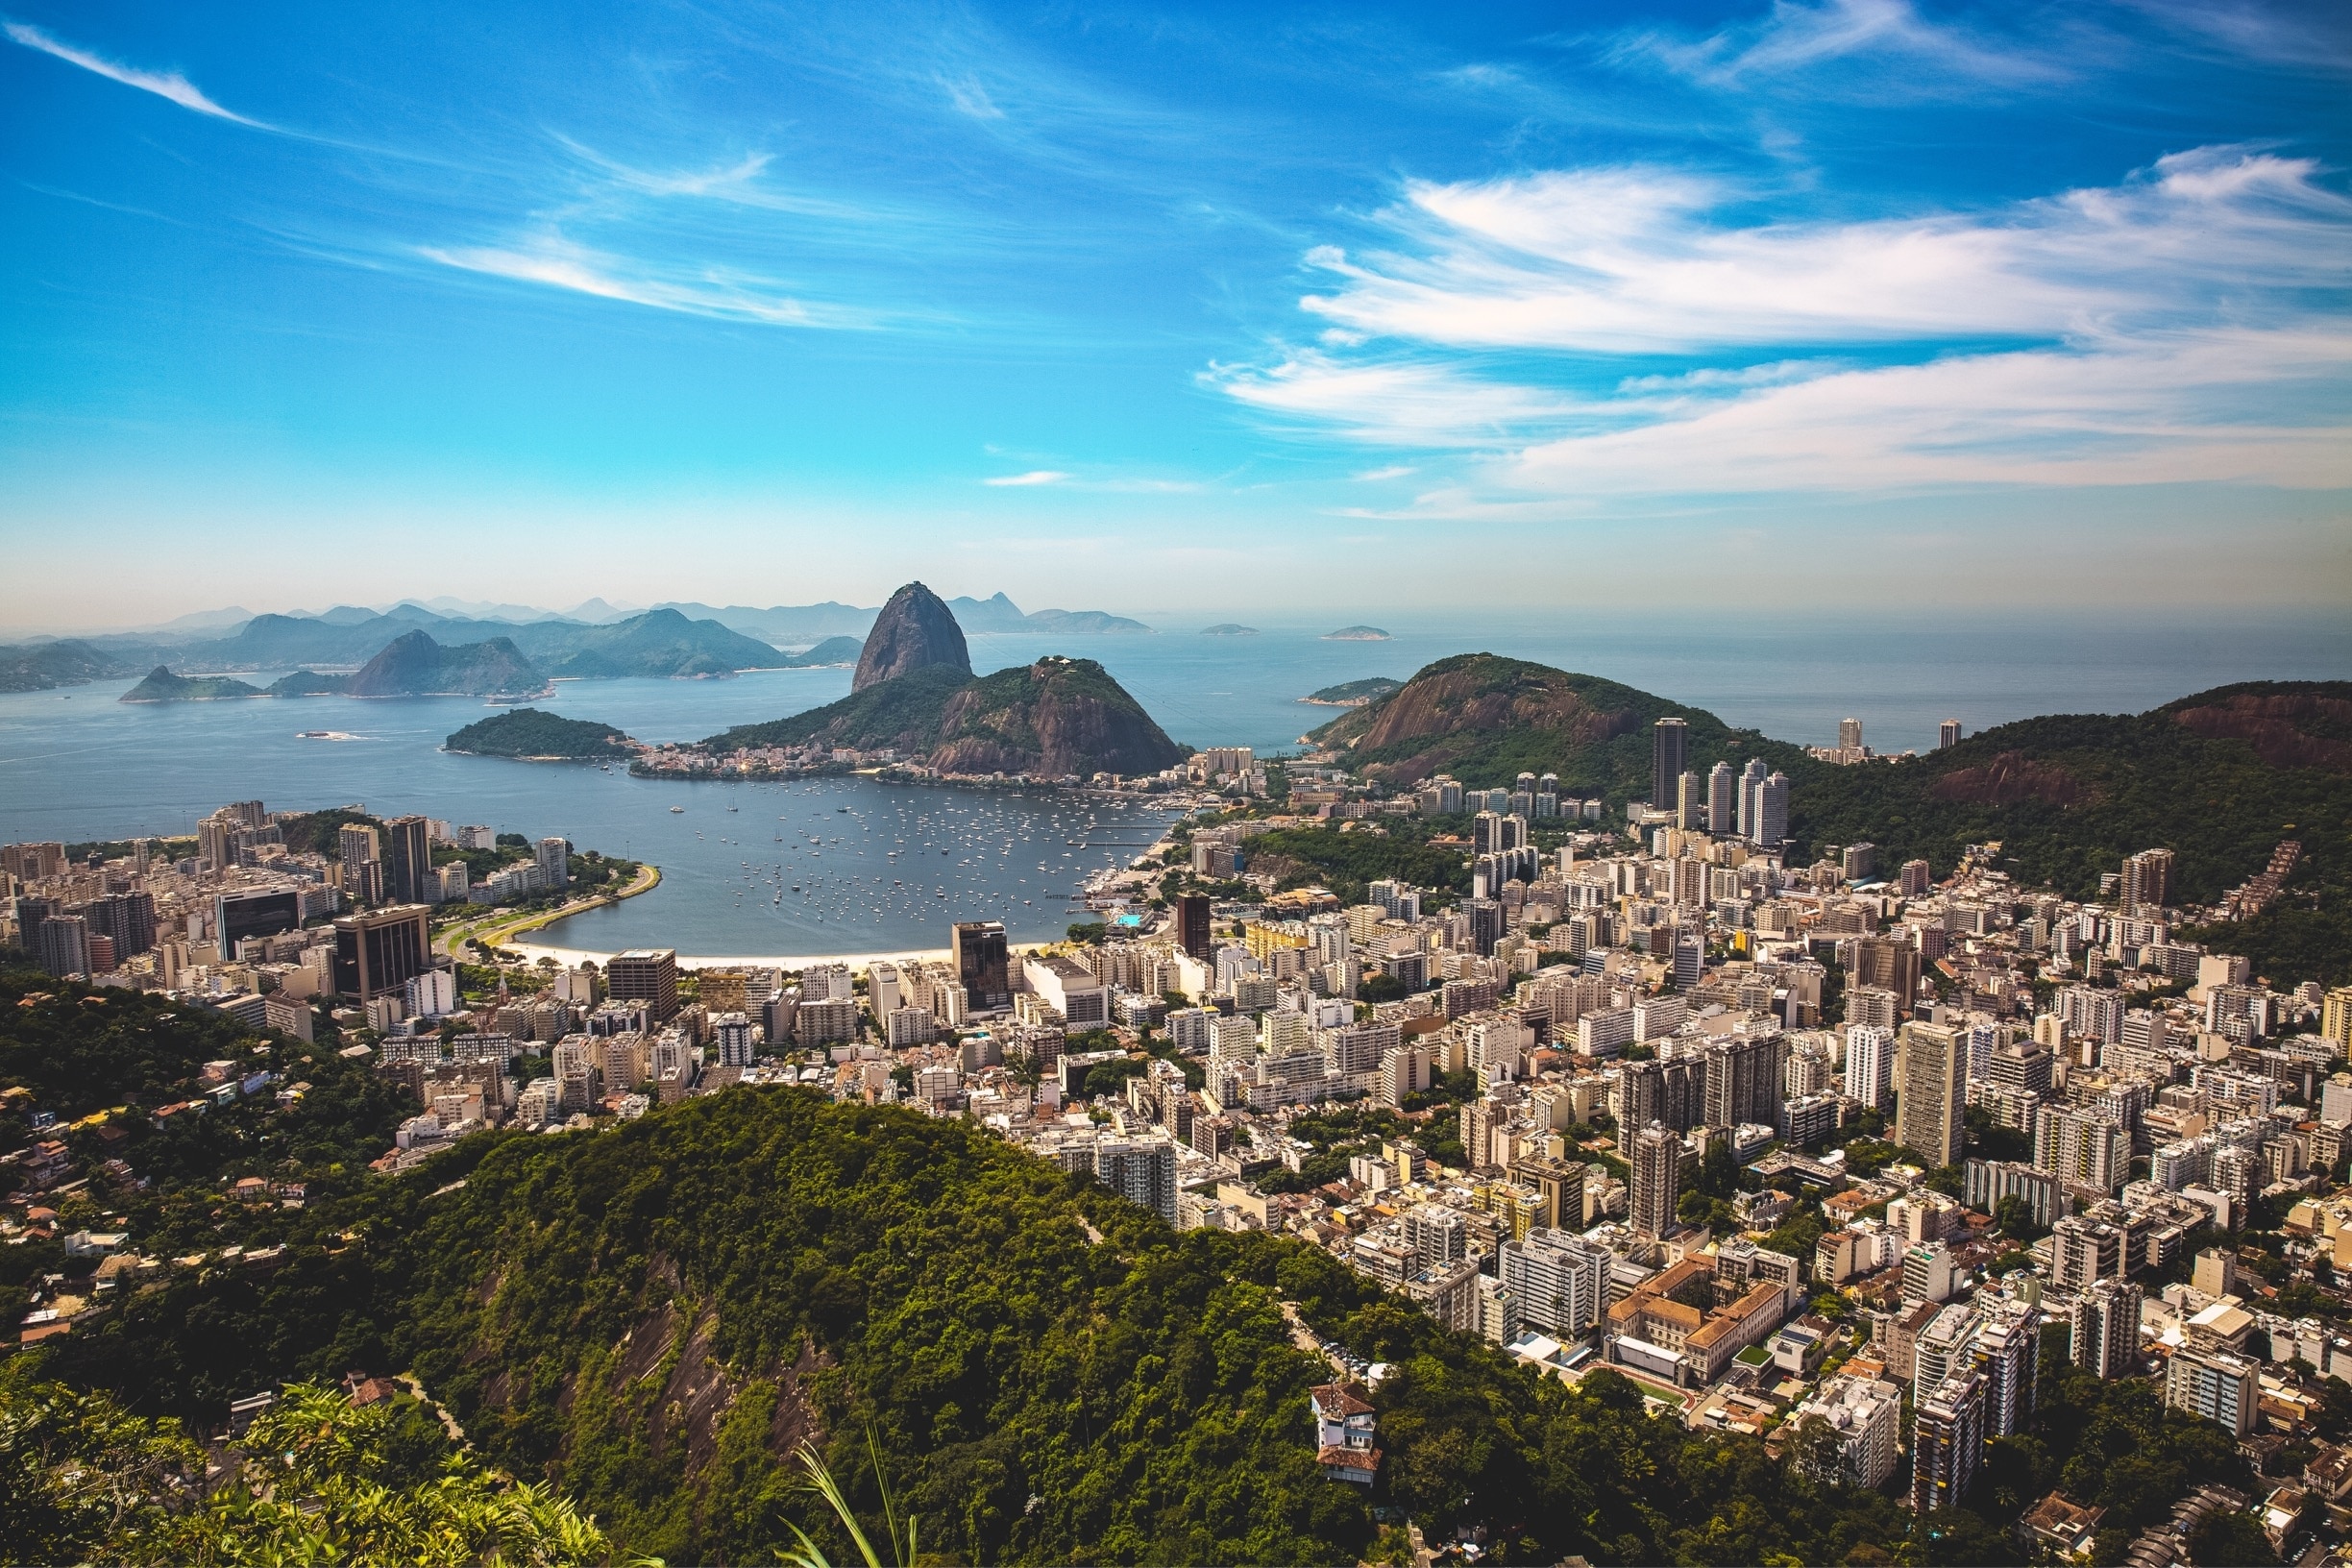 Rio De Janeiro, Brazil. #southamerica #cityscape